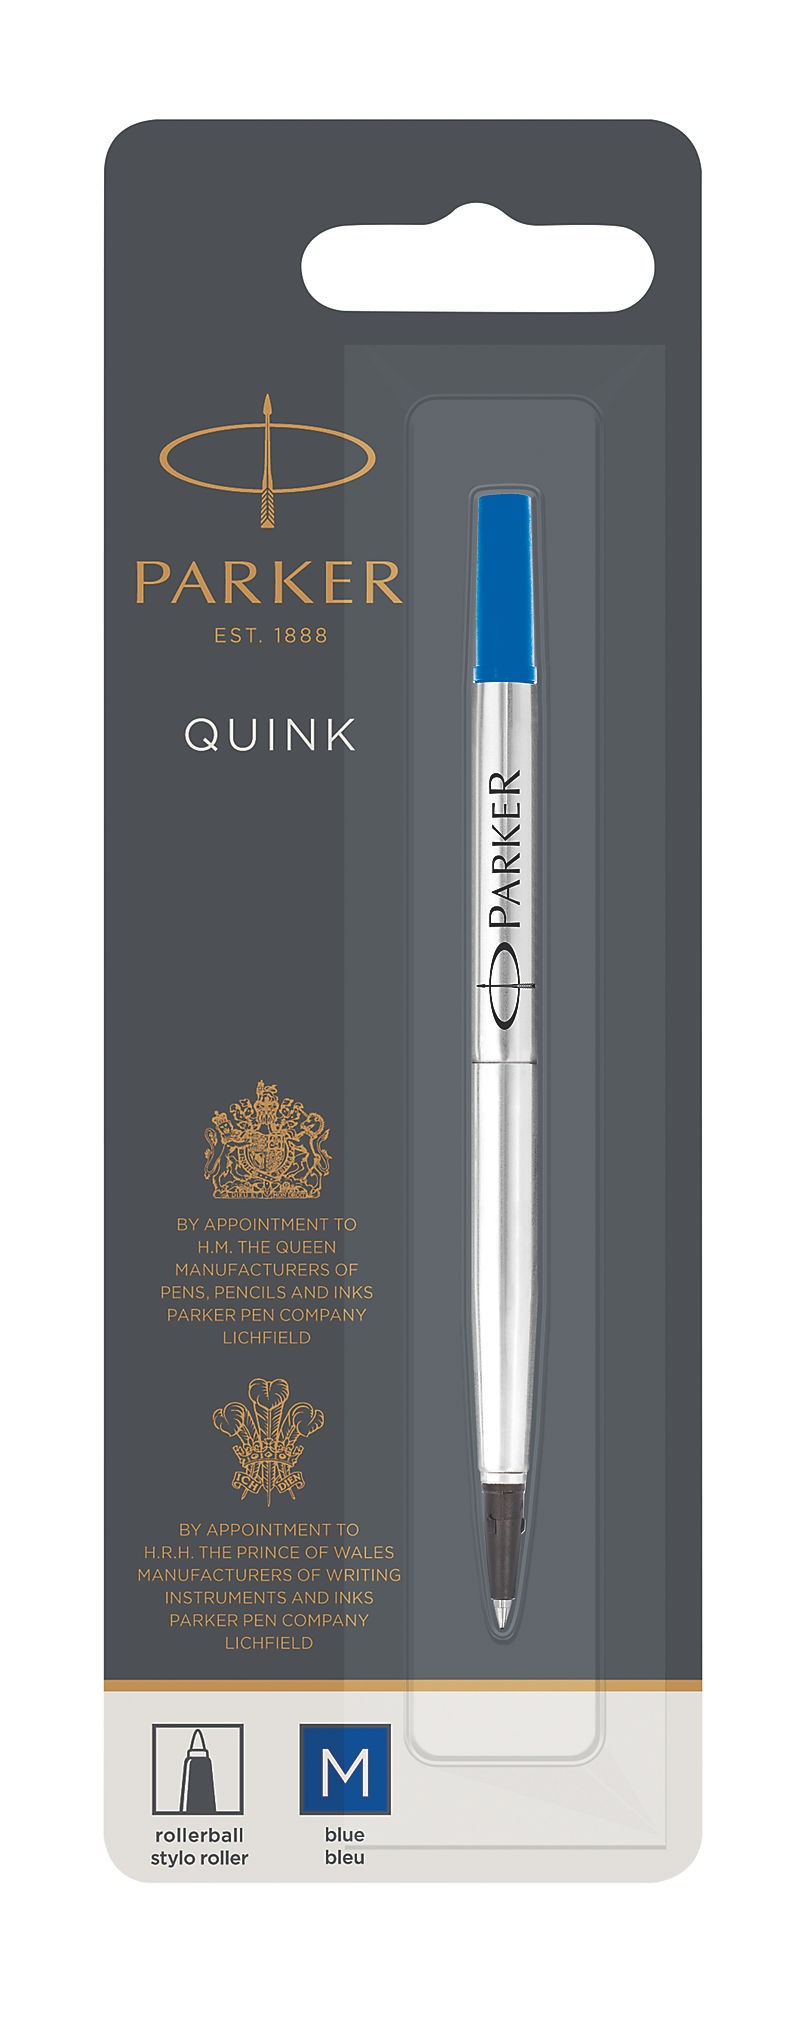 Parker Quink Rollerball Refill for Rollerball Pens Medium Blue (Single Refill)